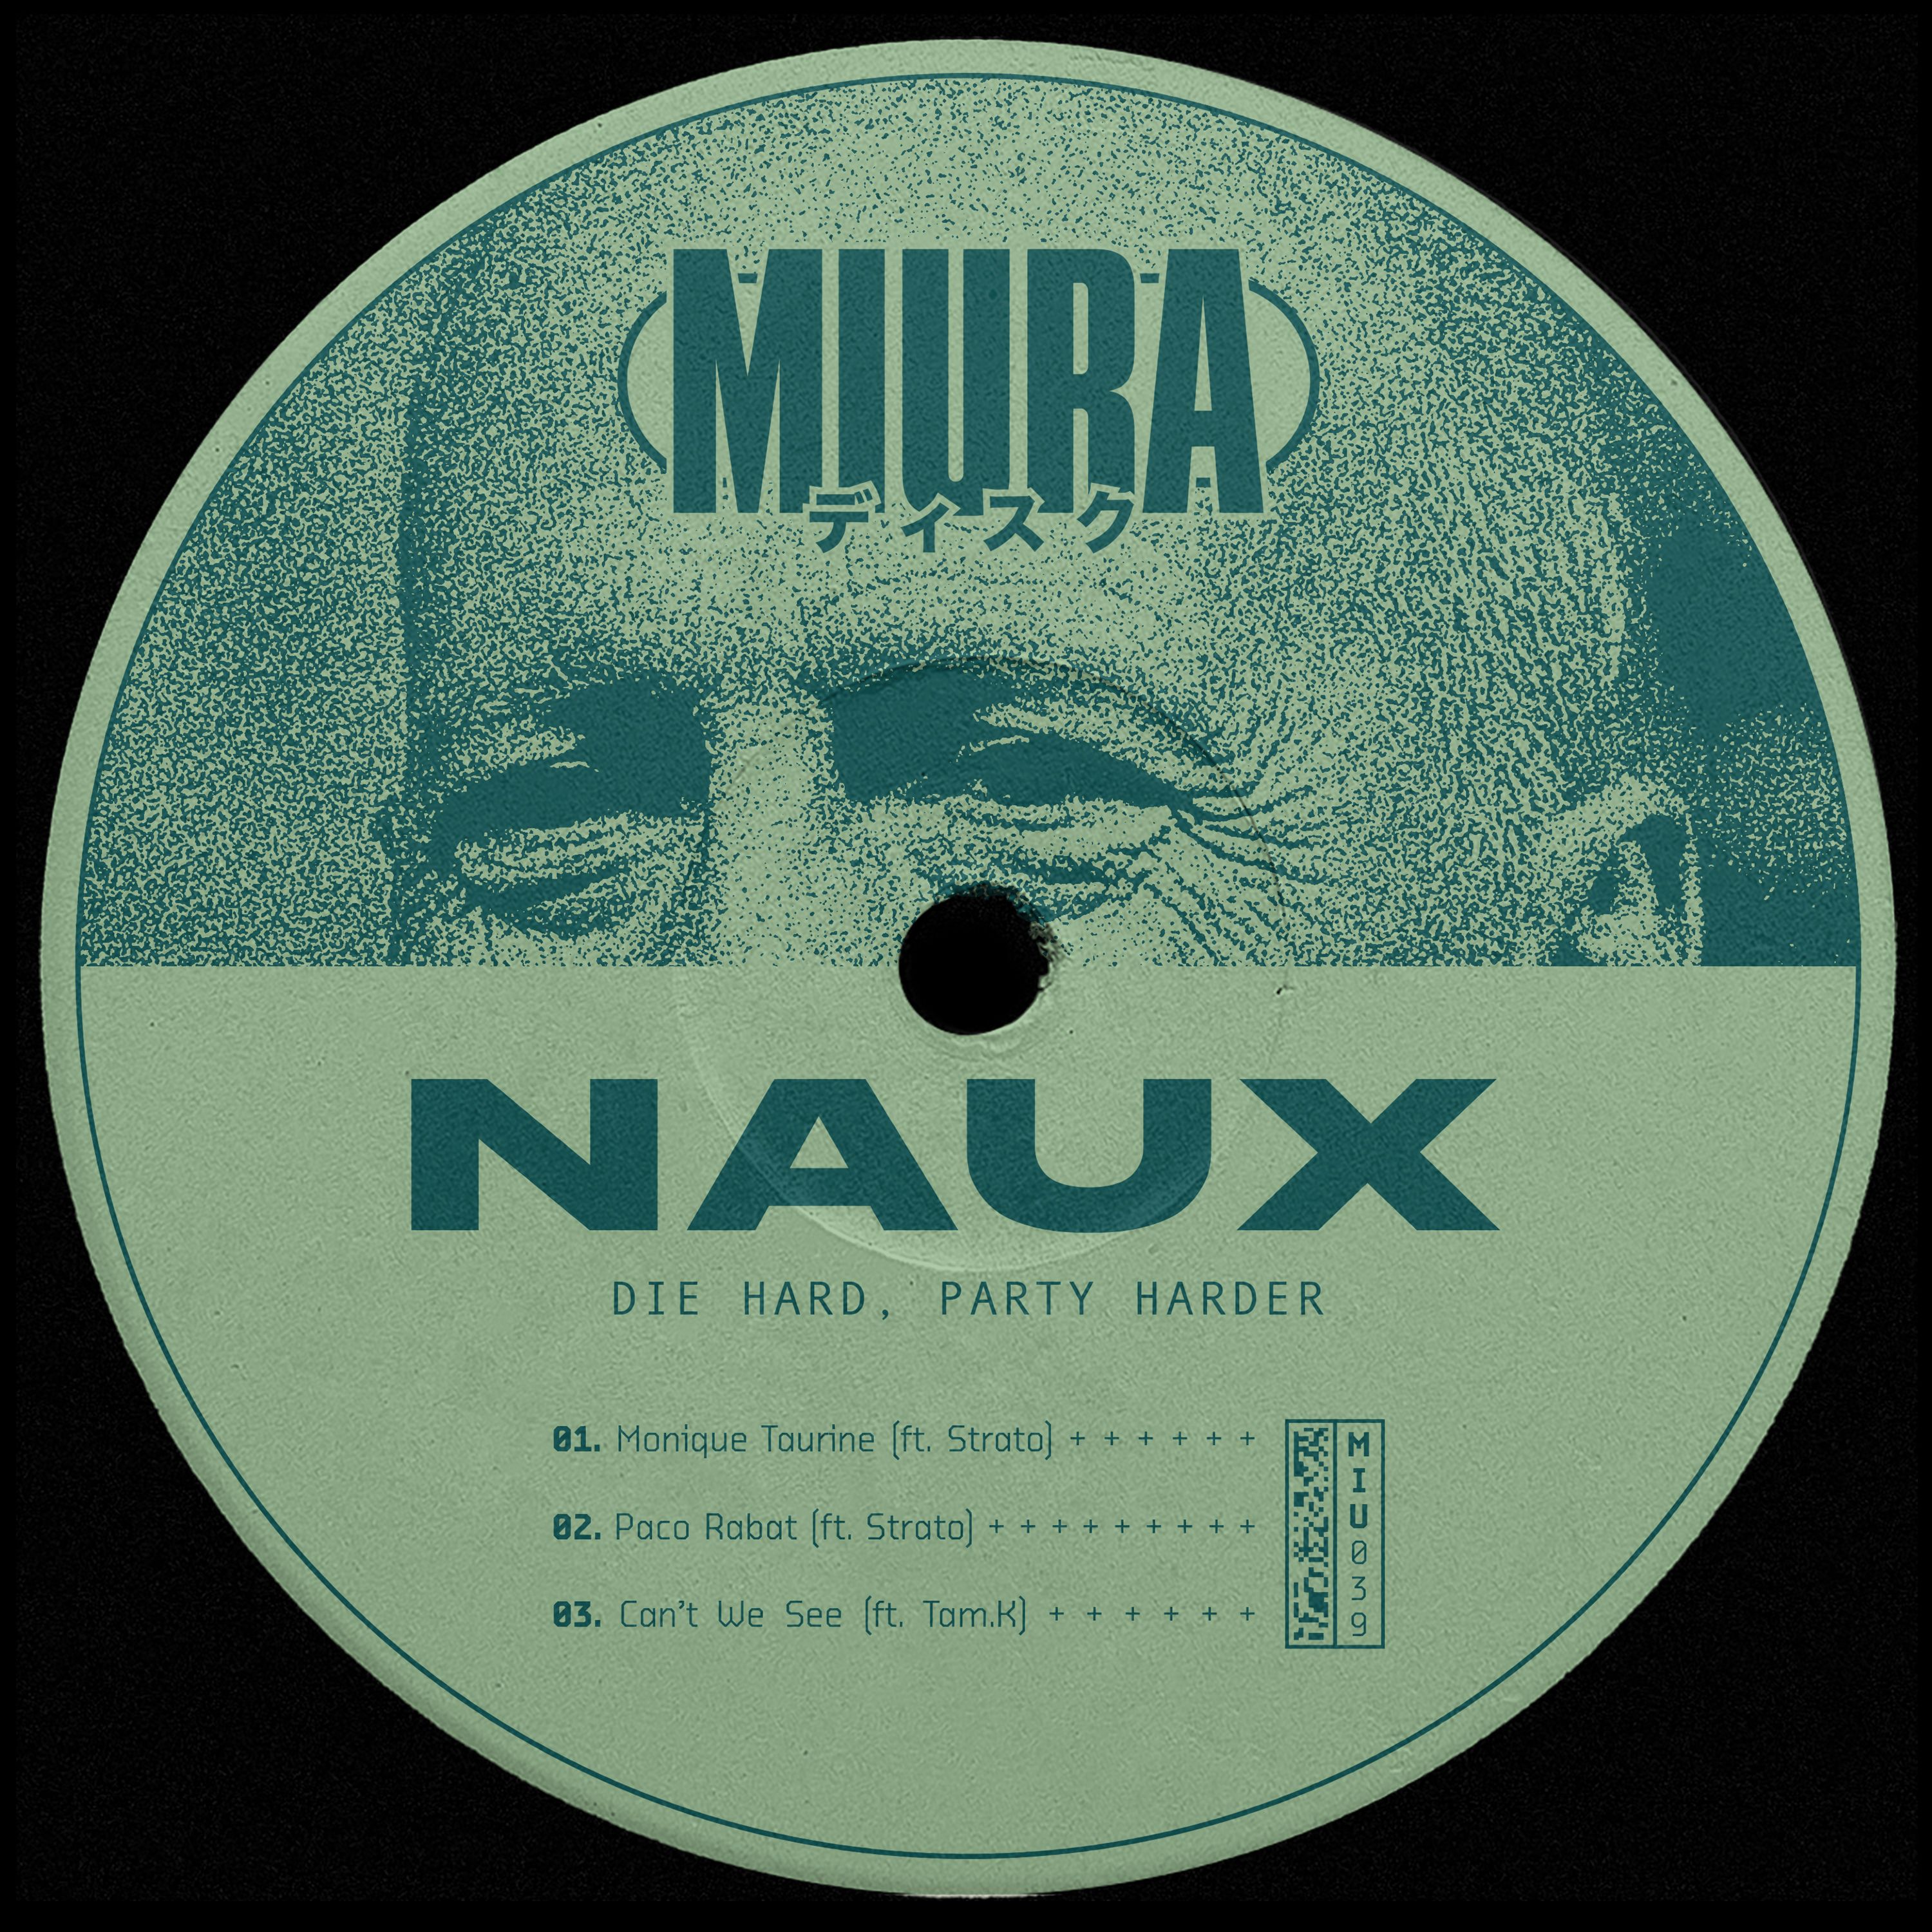 Ladata PREMIERE: Naux & Strato - Monique Taurine [Miura Records]